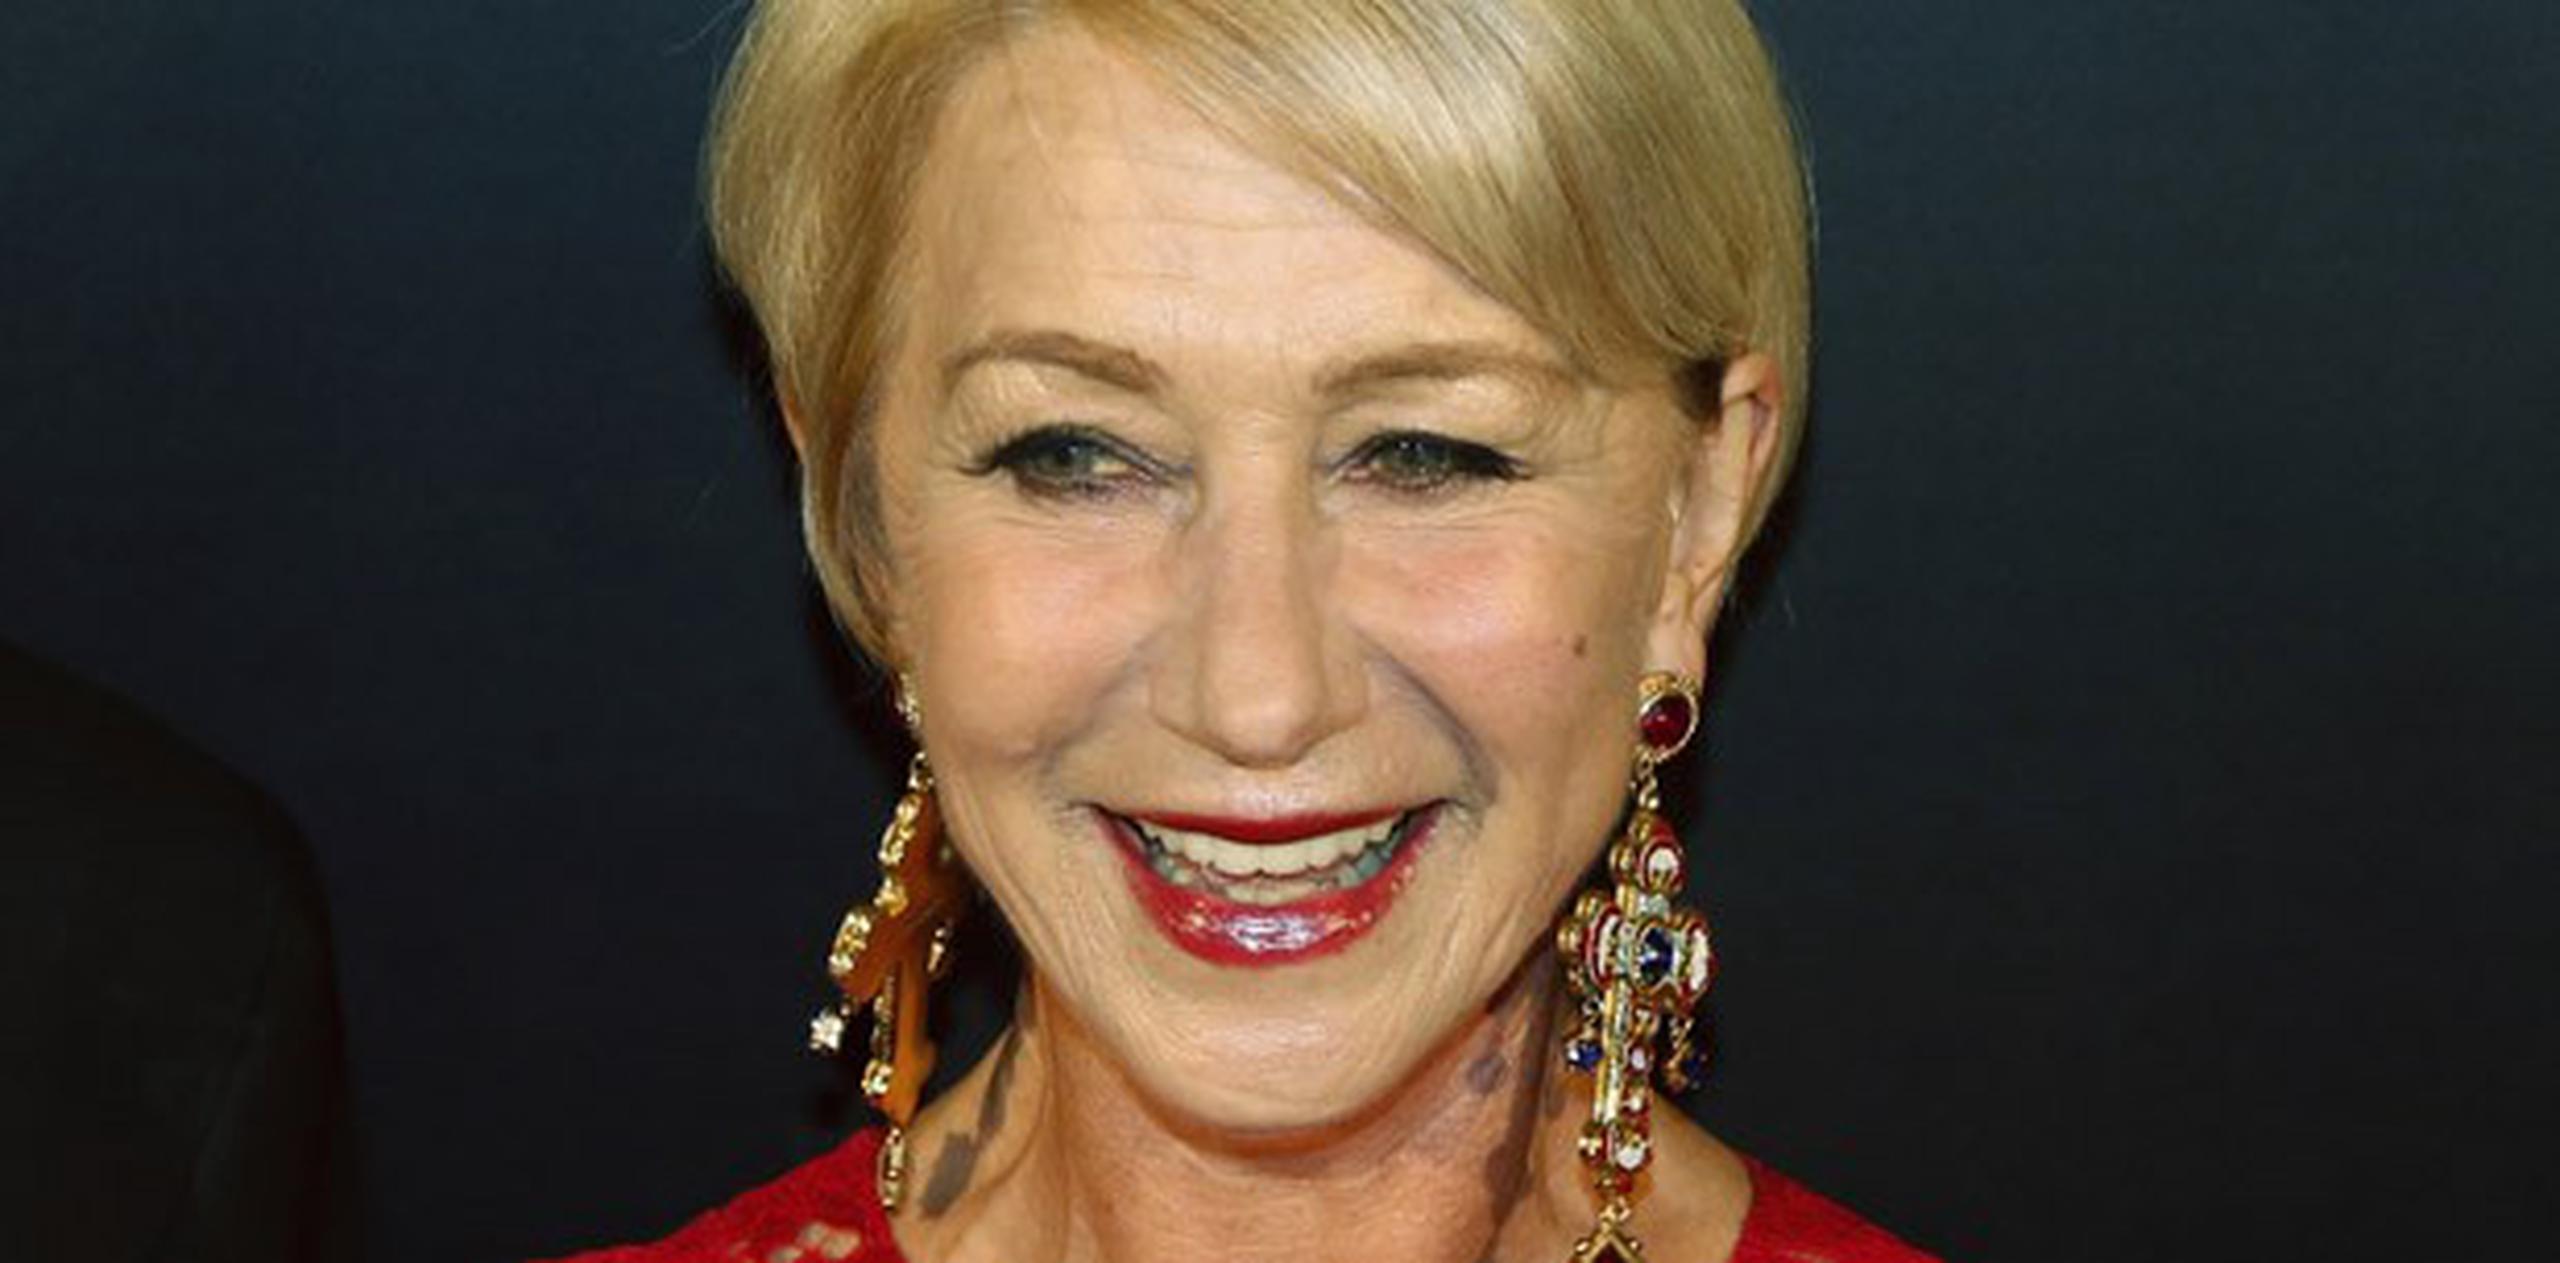 Mirren, de 68 años, ganó el Oscar a la mejor actriz en 2007 por su papel como la reina Isabel II en "The Queen". (Archivo)